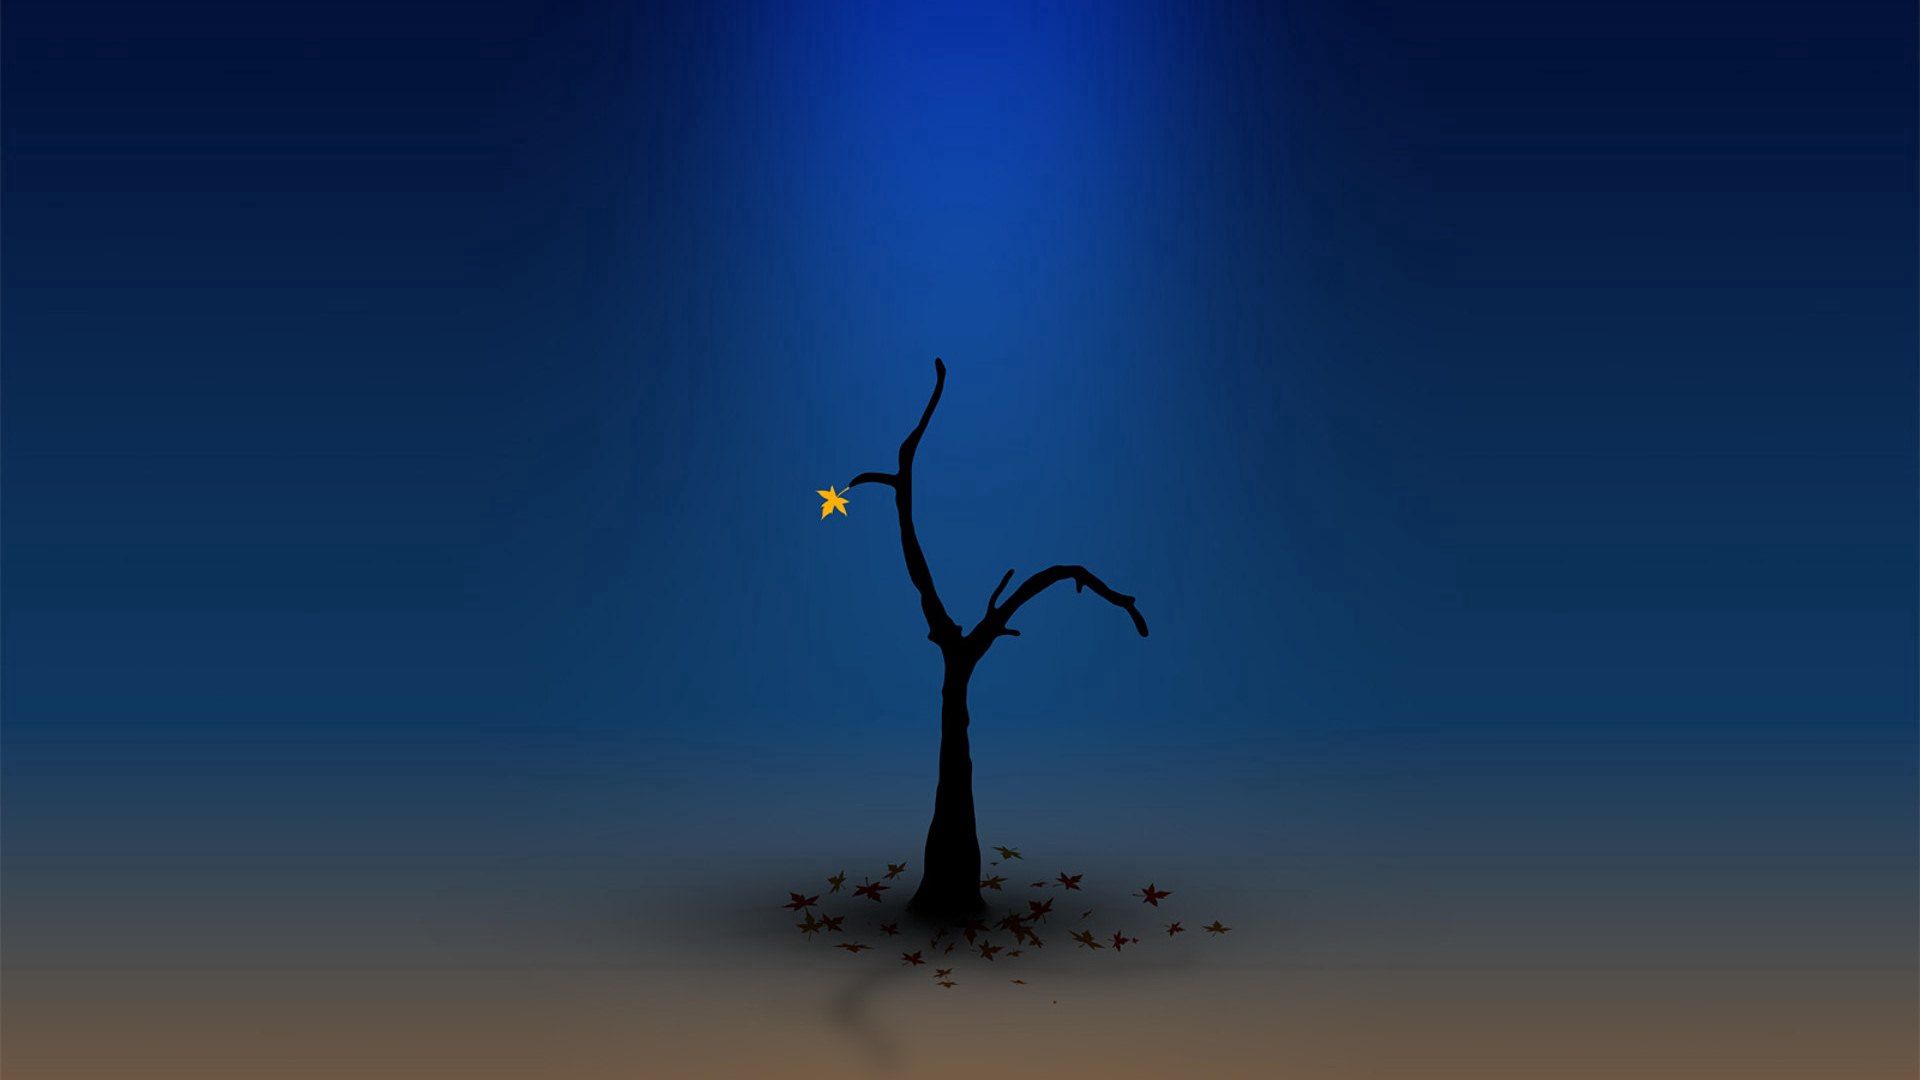 Скачать обои бесплатно Дерево, Оранжевый, Синий, Темный, Одиночество, Вектор картинка на рабочий стол ПК